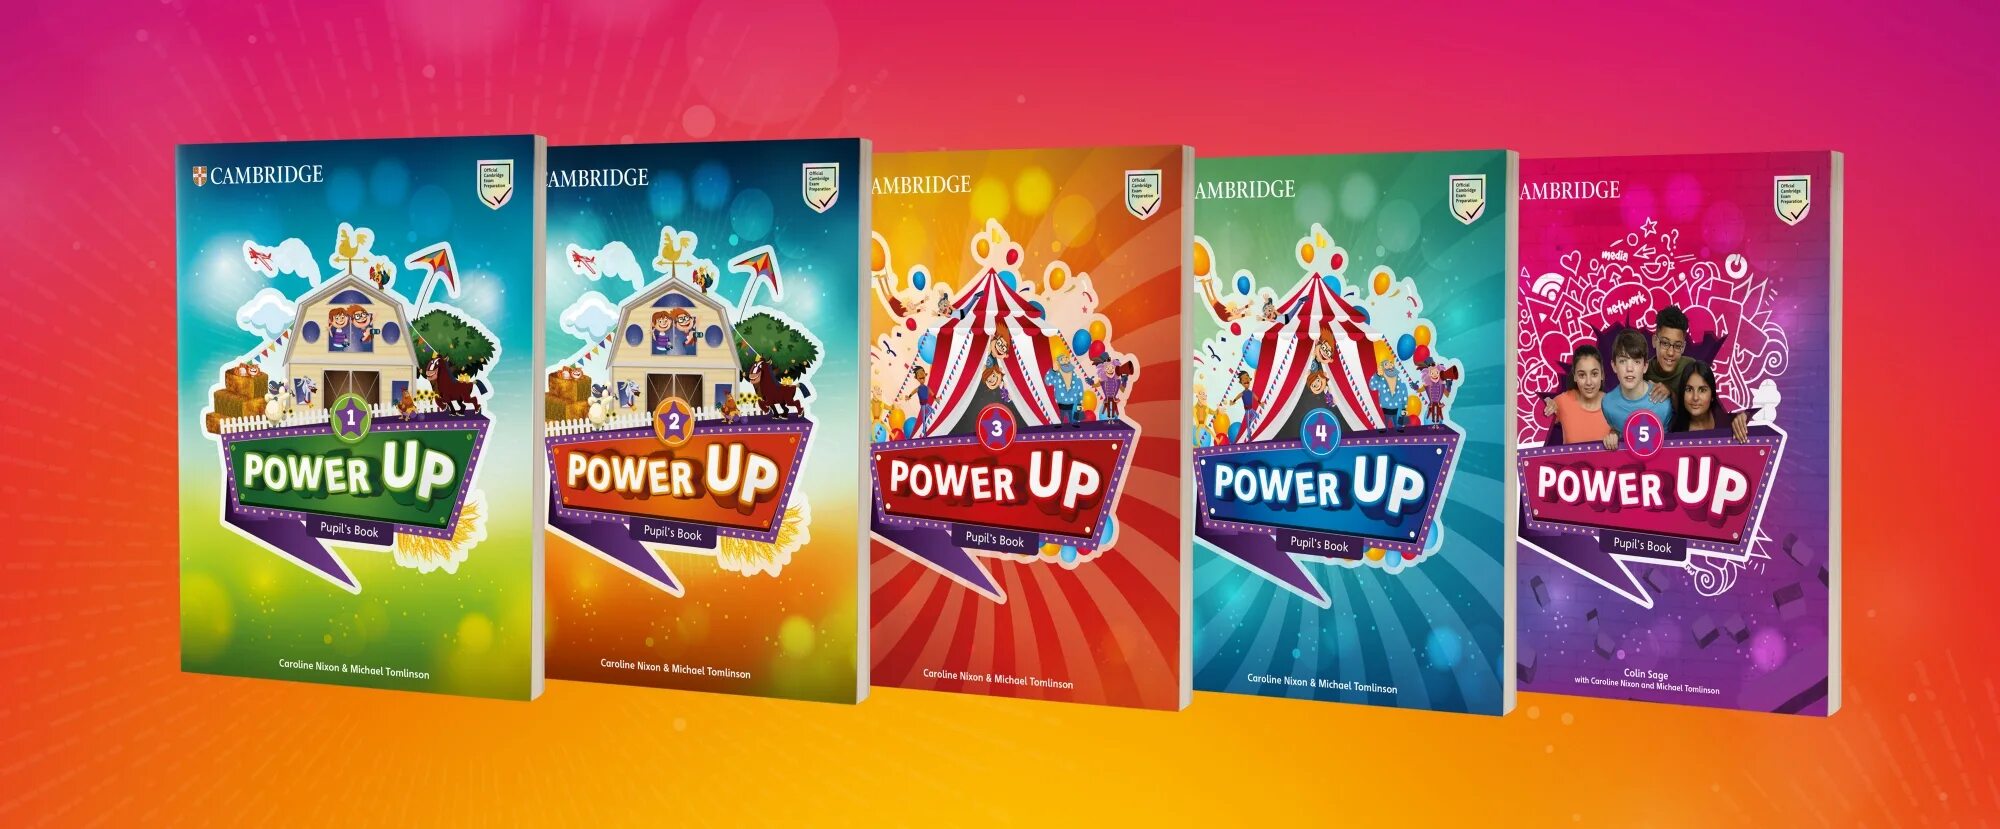 Cambridge Power up 1. Учебник Power up 1. Power up УМК. Power up 2 учебник. Up up student pdf